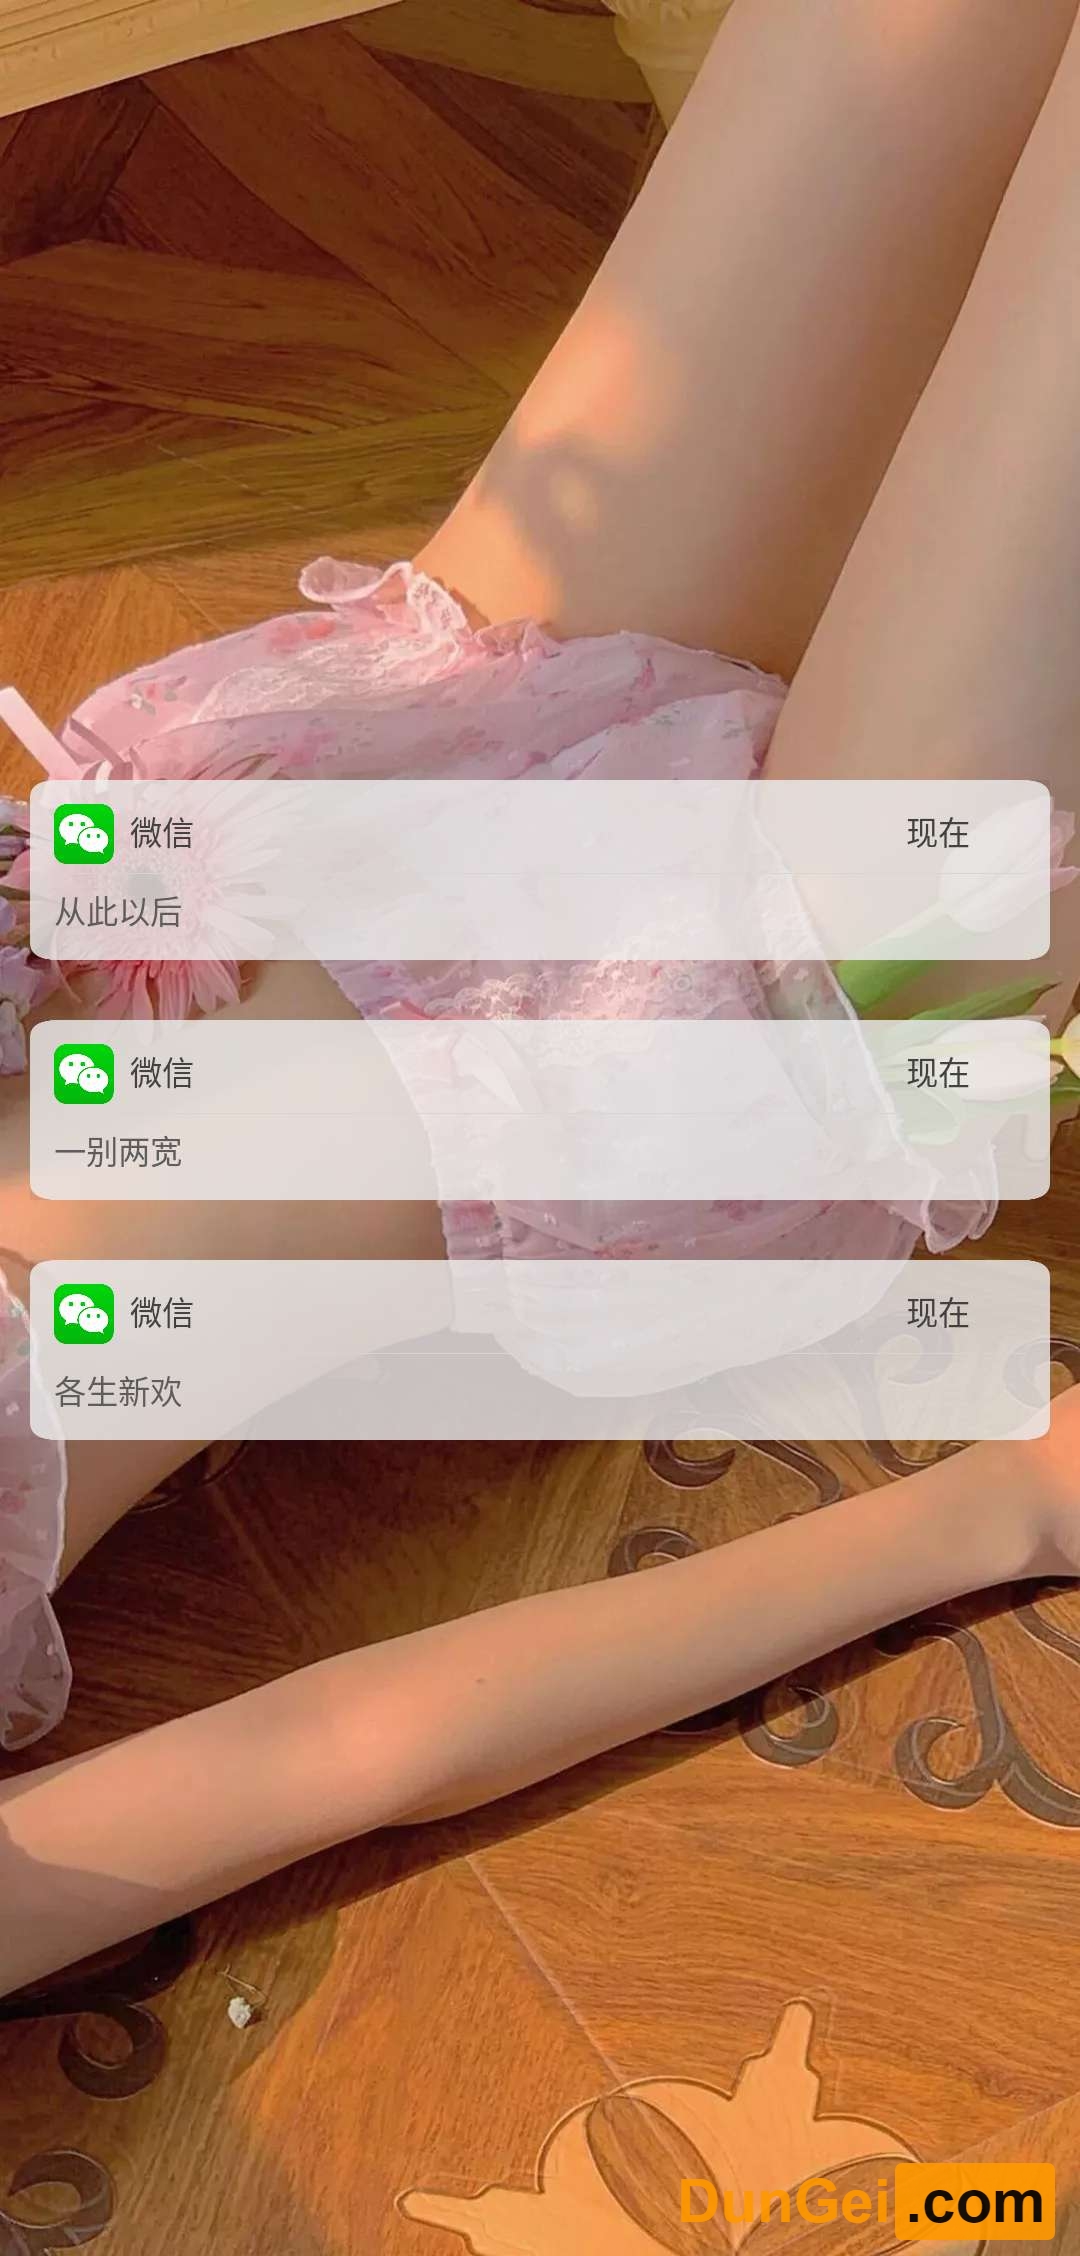 [安卓android]微信信息壁纸生成_自定义信息